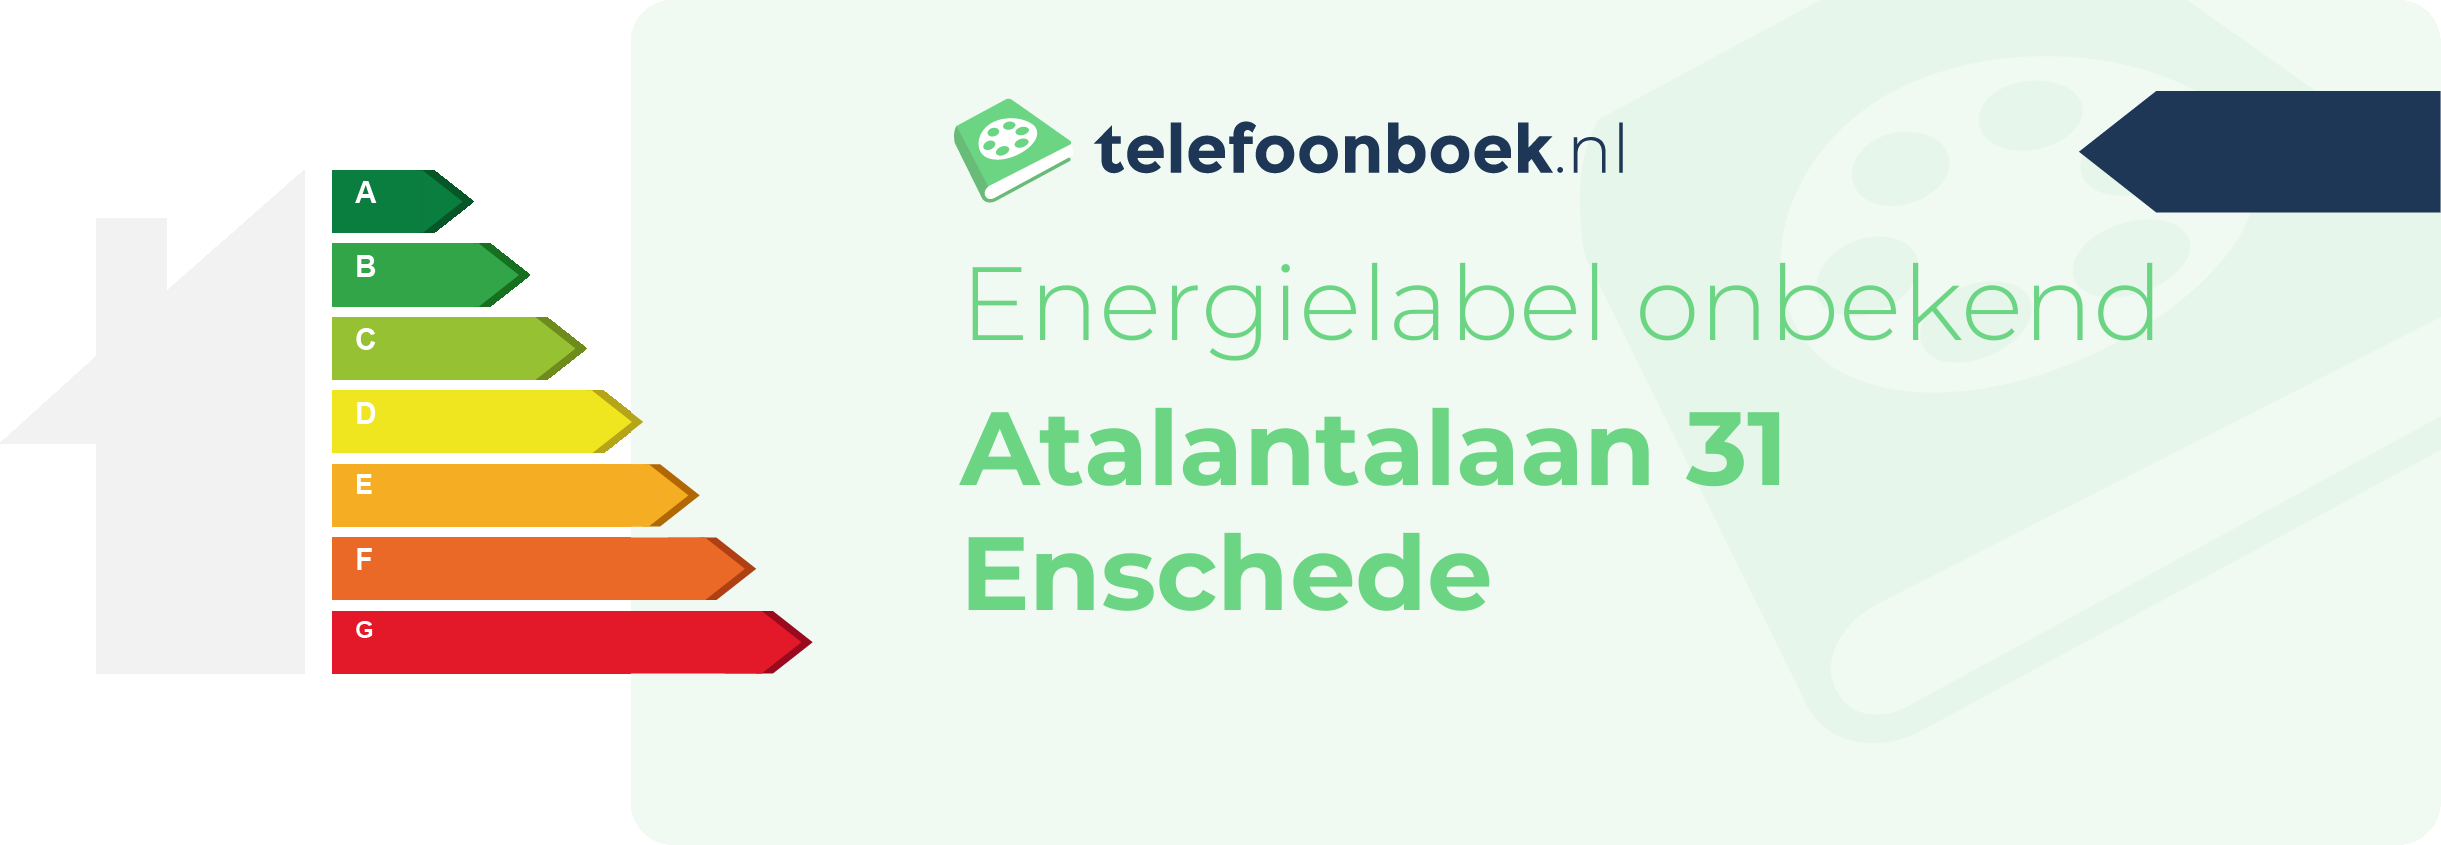 Energielabel Atalantalaan 31 Enschede